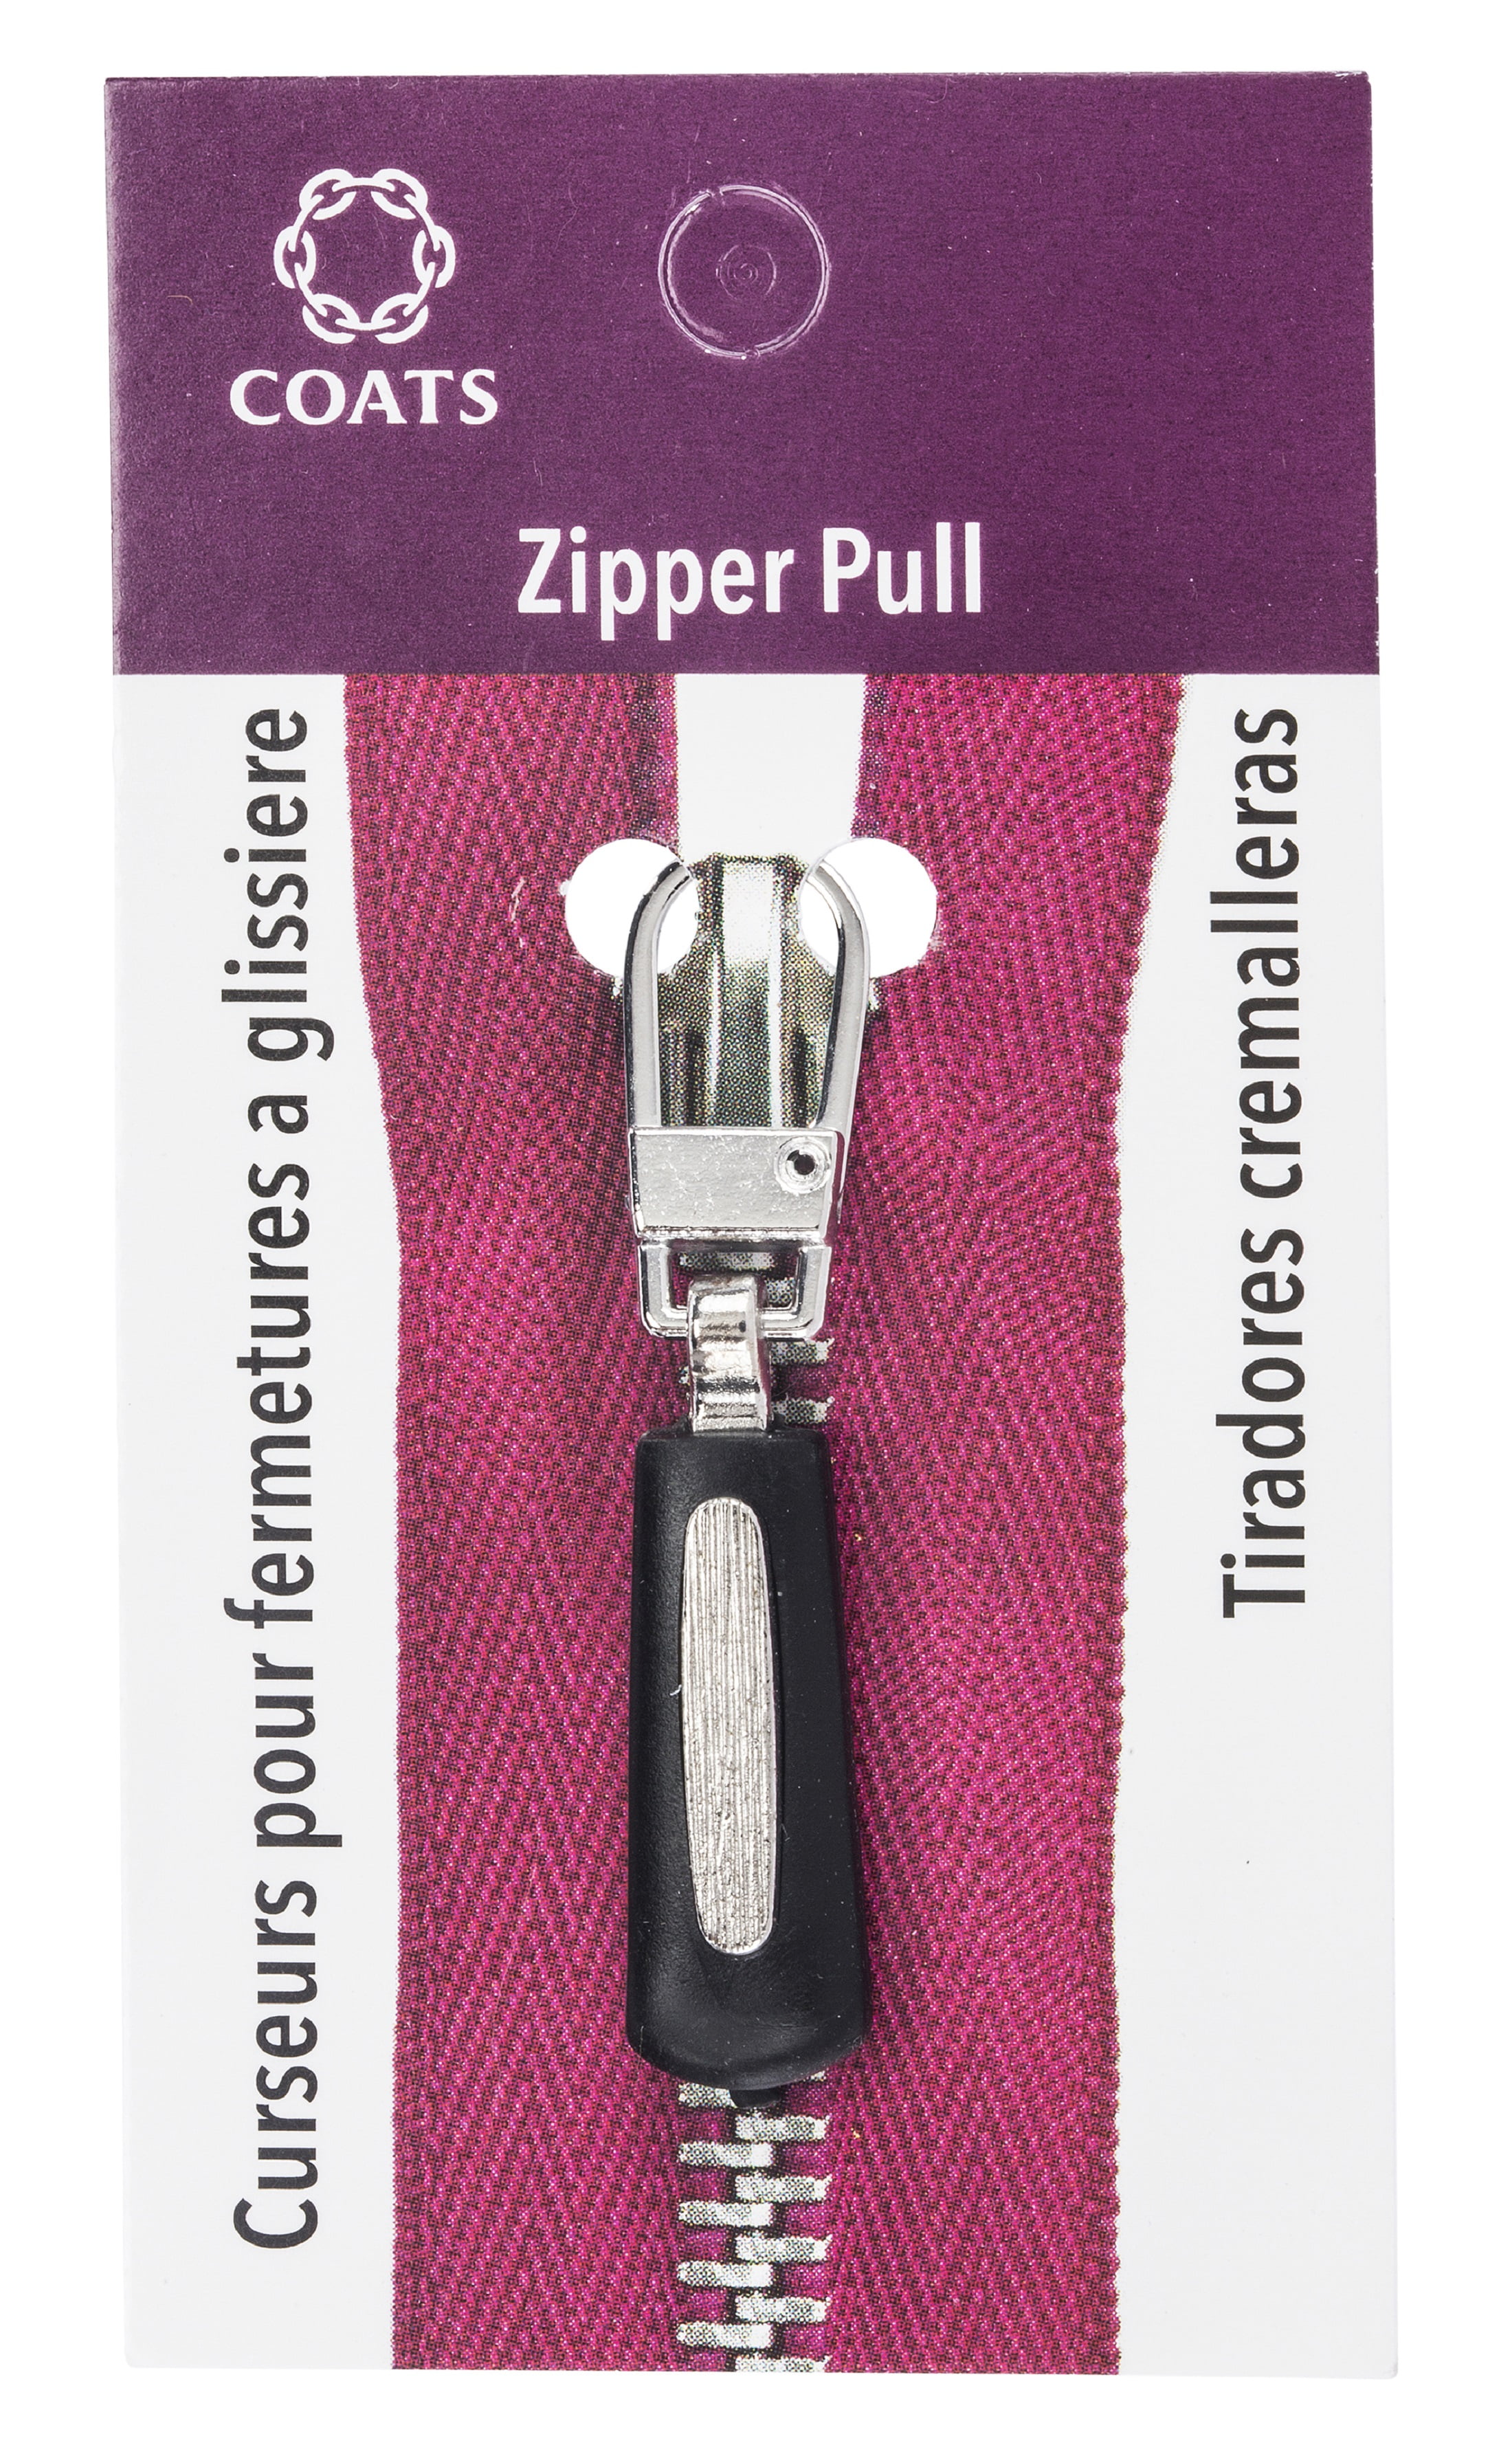 zipper pulls